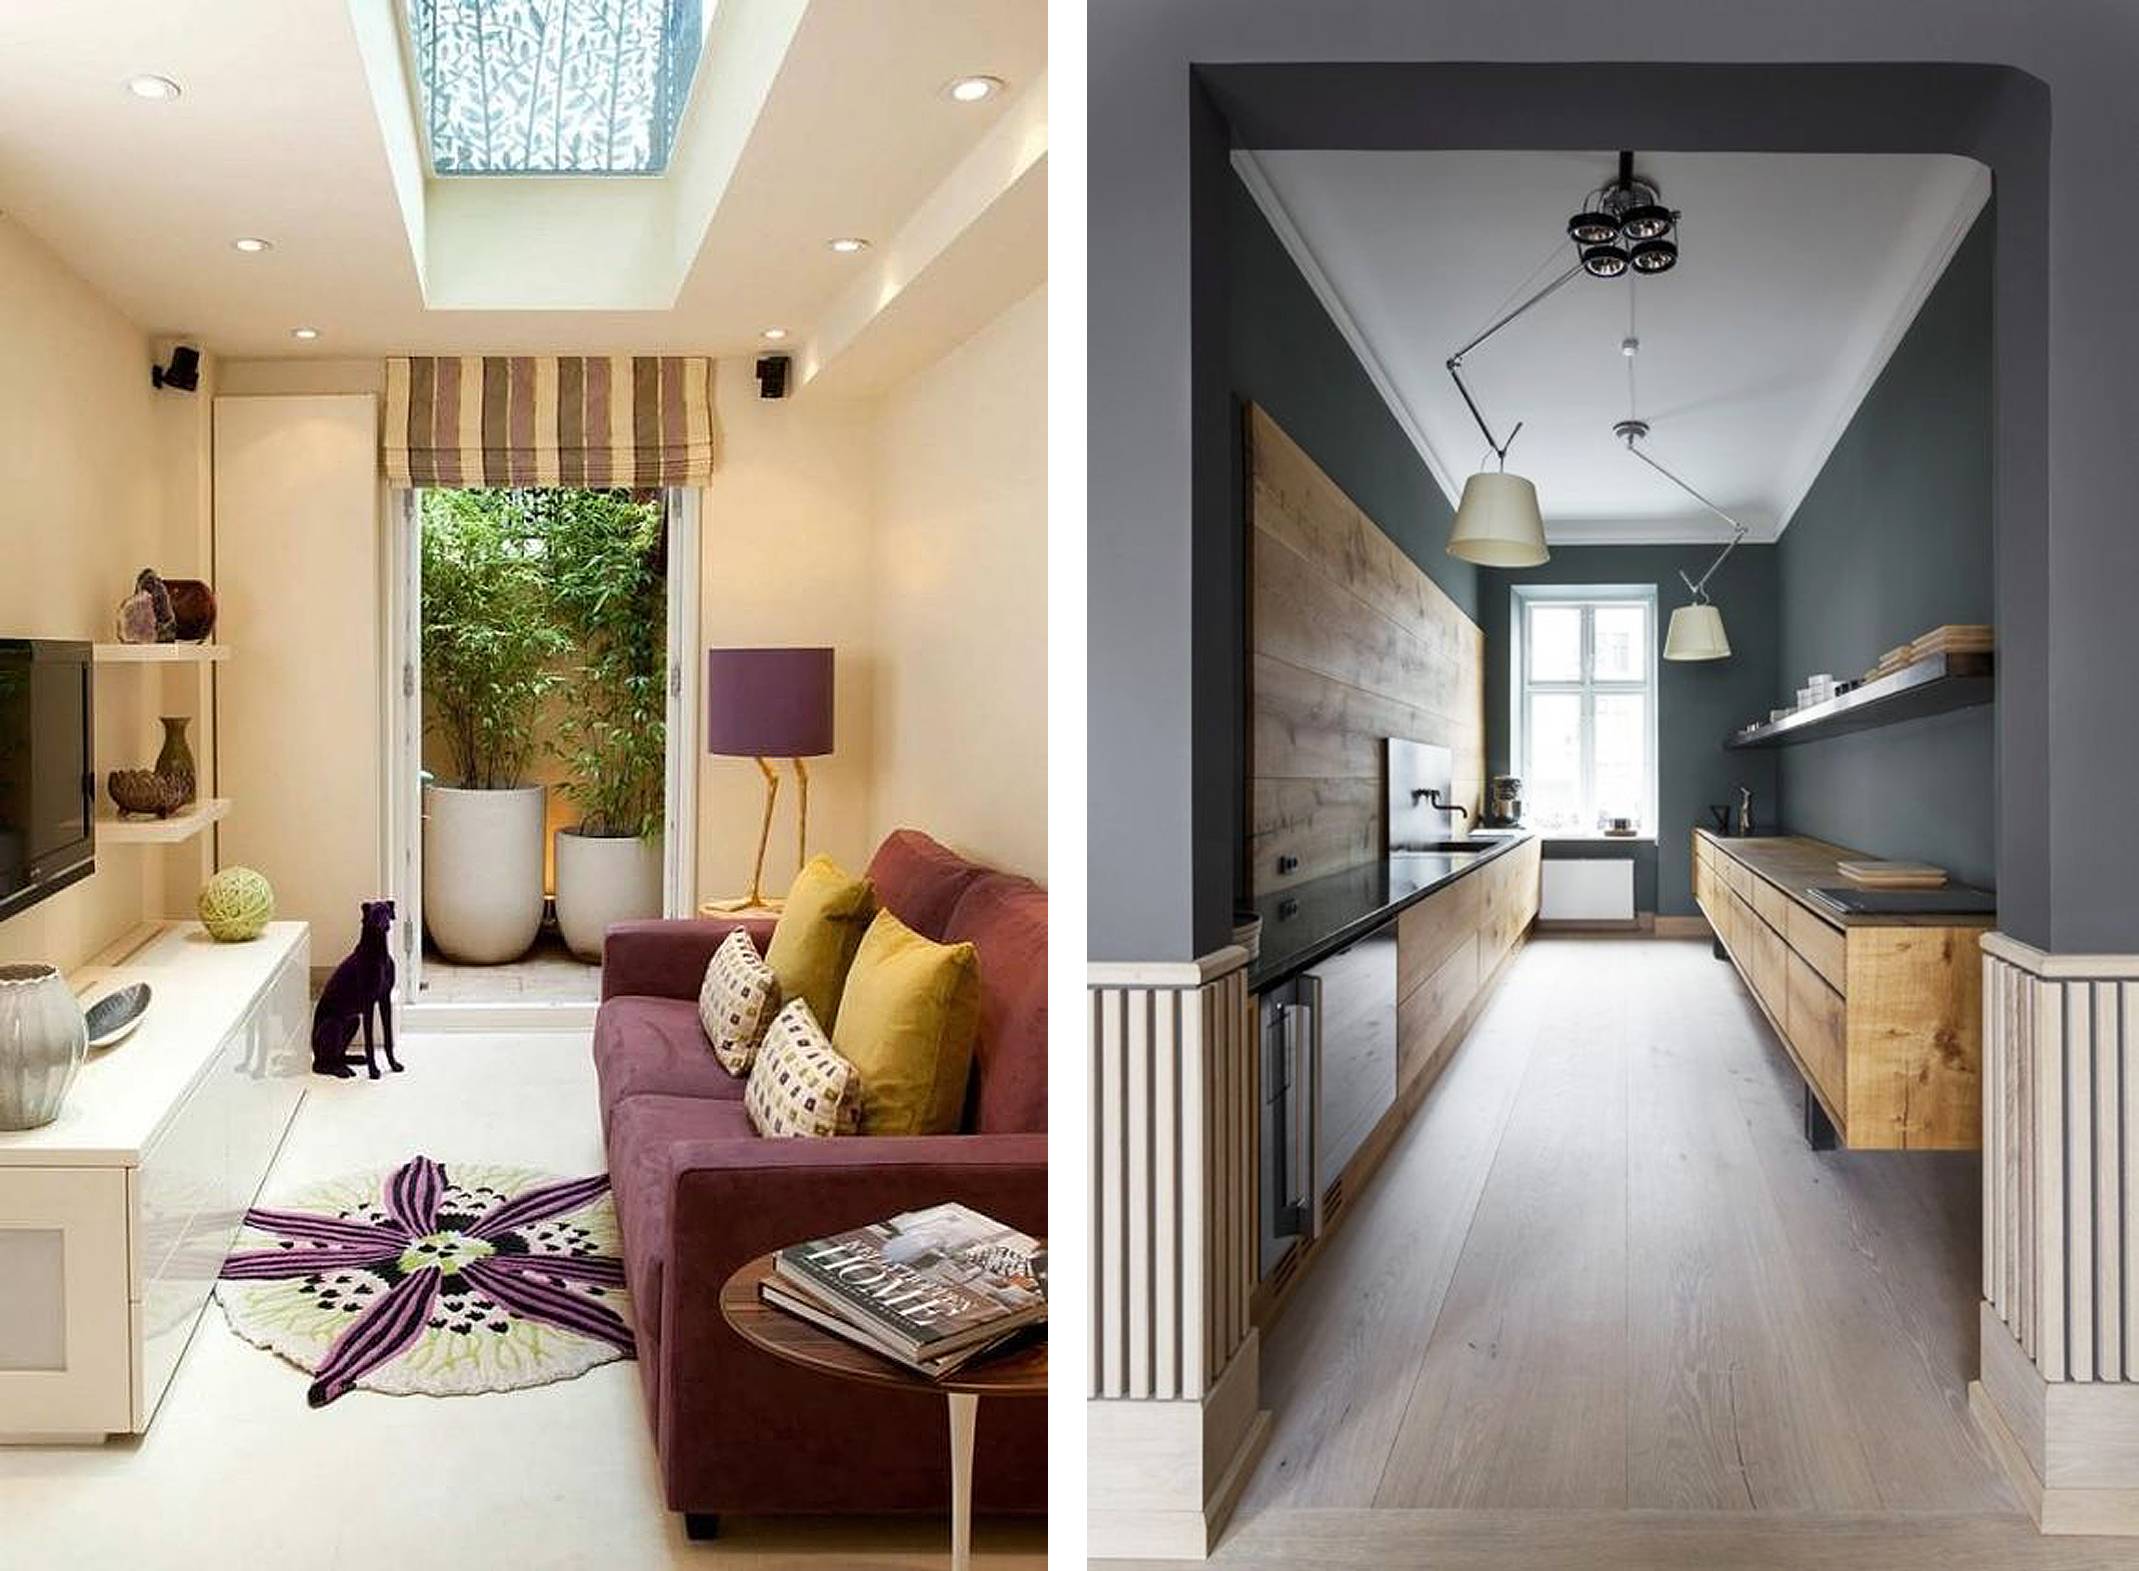 Дизайн интерьера маленьких квартир: фото 12 идей по расширению площади